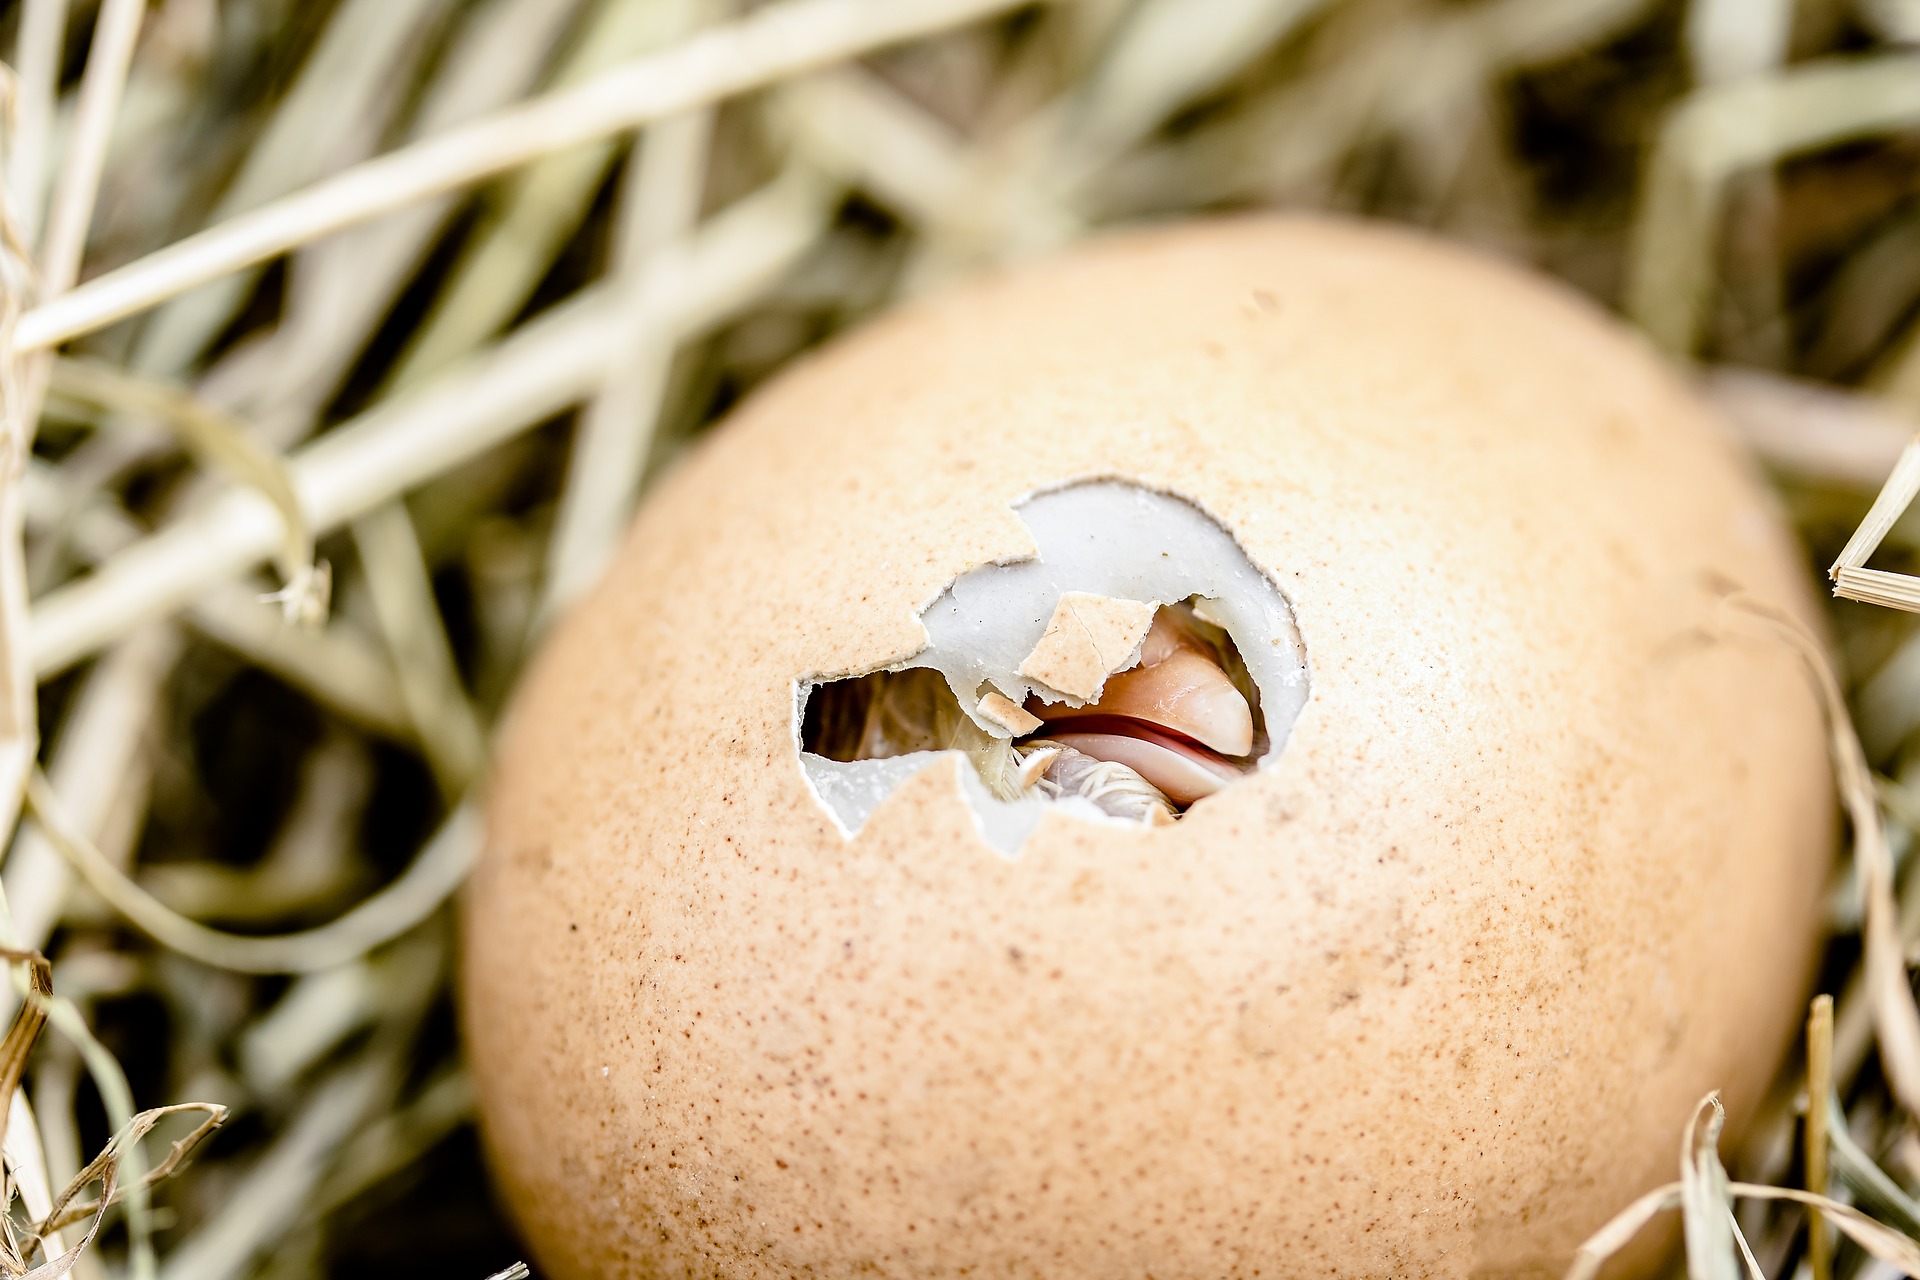 Un pulcino rompe il guscio dell'uovo che lo contiene. Credit: Myriams - Fotos. Licenza: Public Domain. 